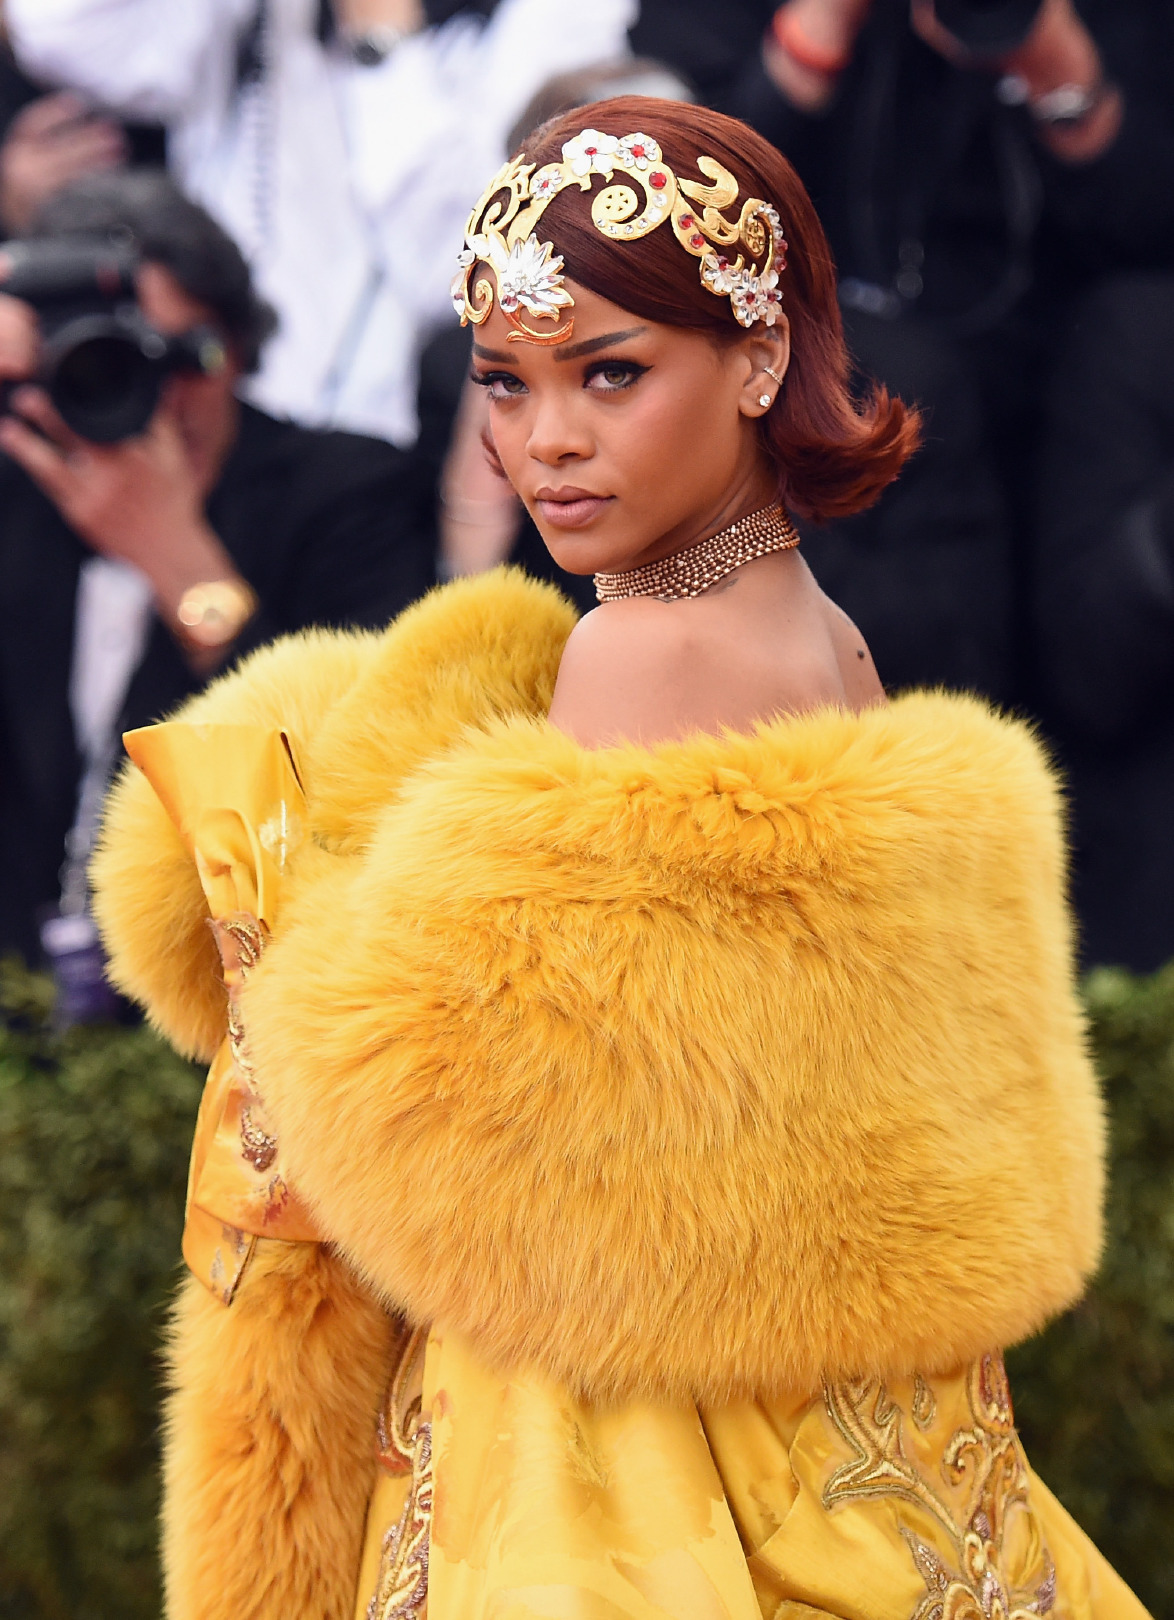 Amazon'a Rihanna Belgeseli Geliyor!